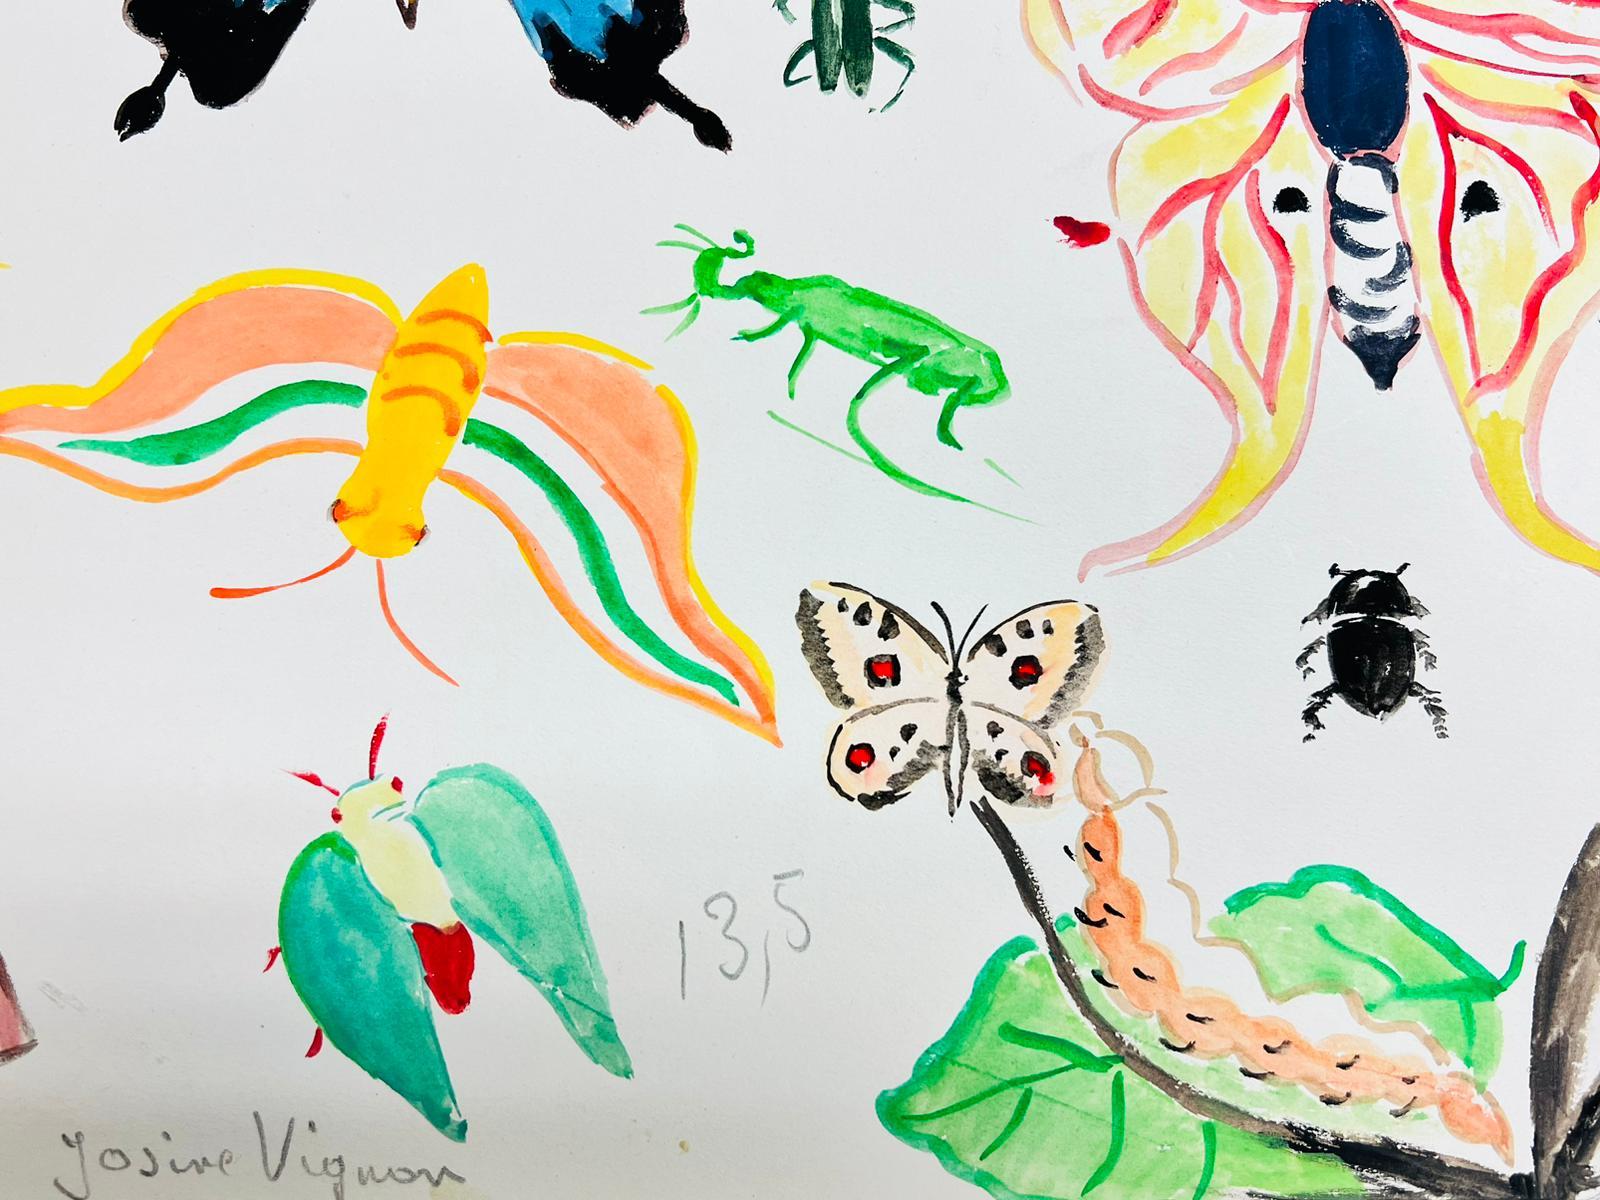 Schmetterlinge
von Josine Vignon (Französisch 1922-2022) 
unterzeichnet
Pastell/Aquarell auf Papier, ungerahmt
Gemälde: 13 x 19 Zoll
guter Zustand
Herkunft: aus dem Nachlass des Künstlers, Frankreich

Josine Vignon (1922-2022) war eine französische